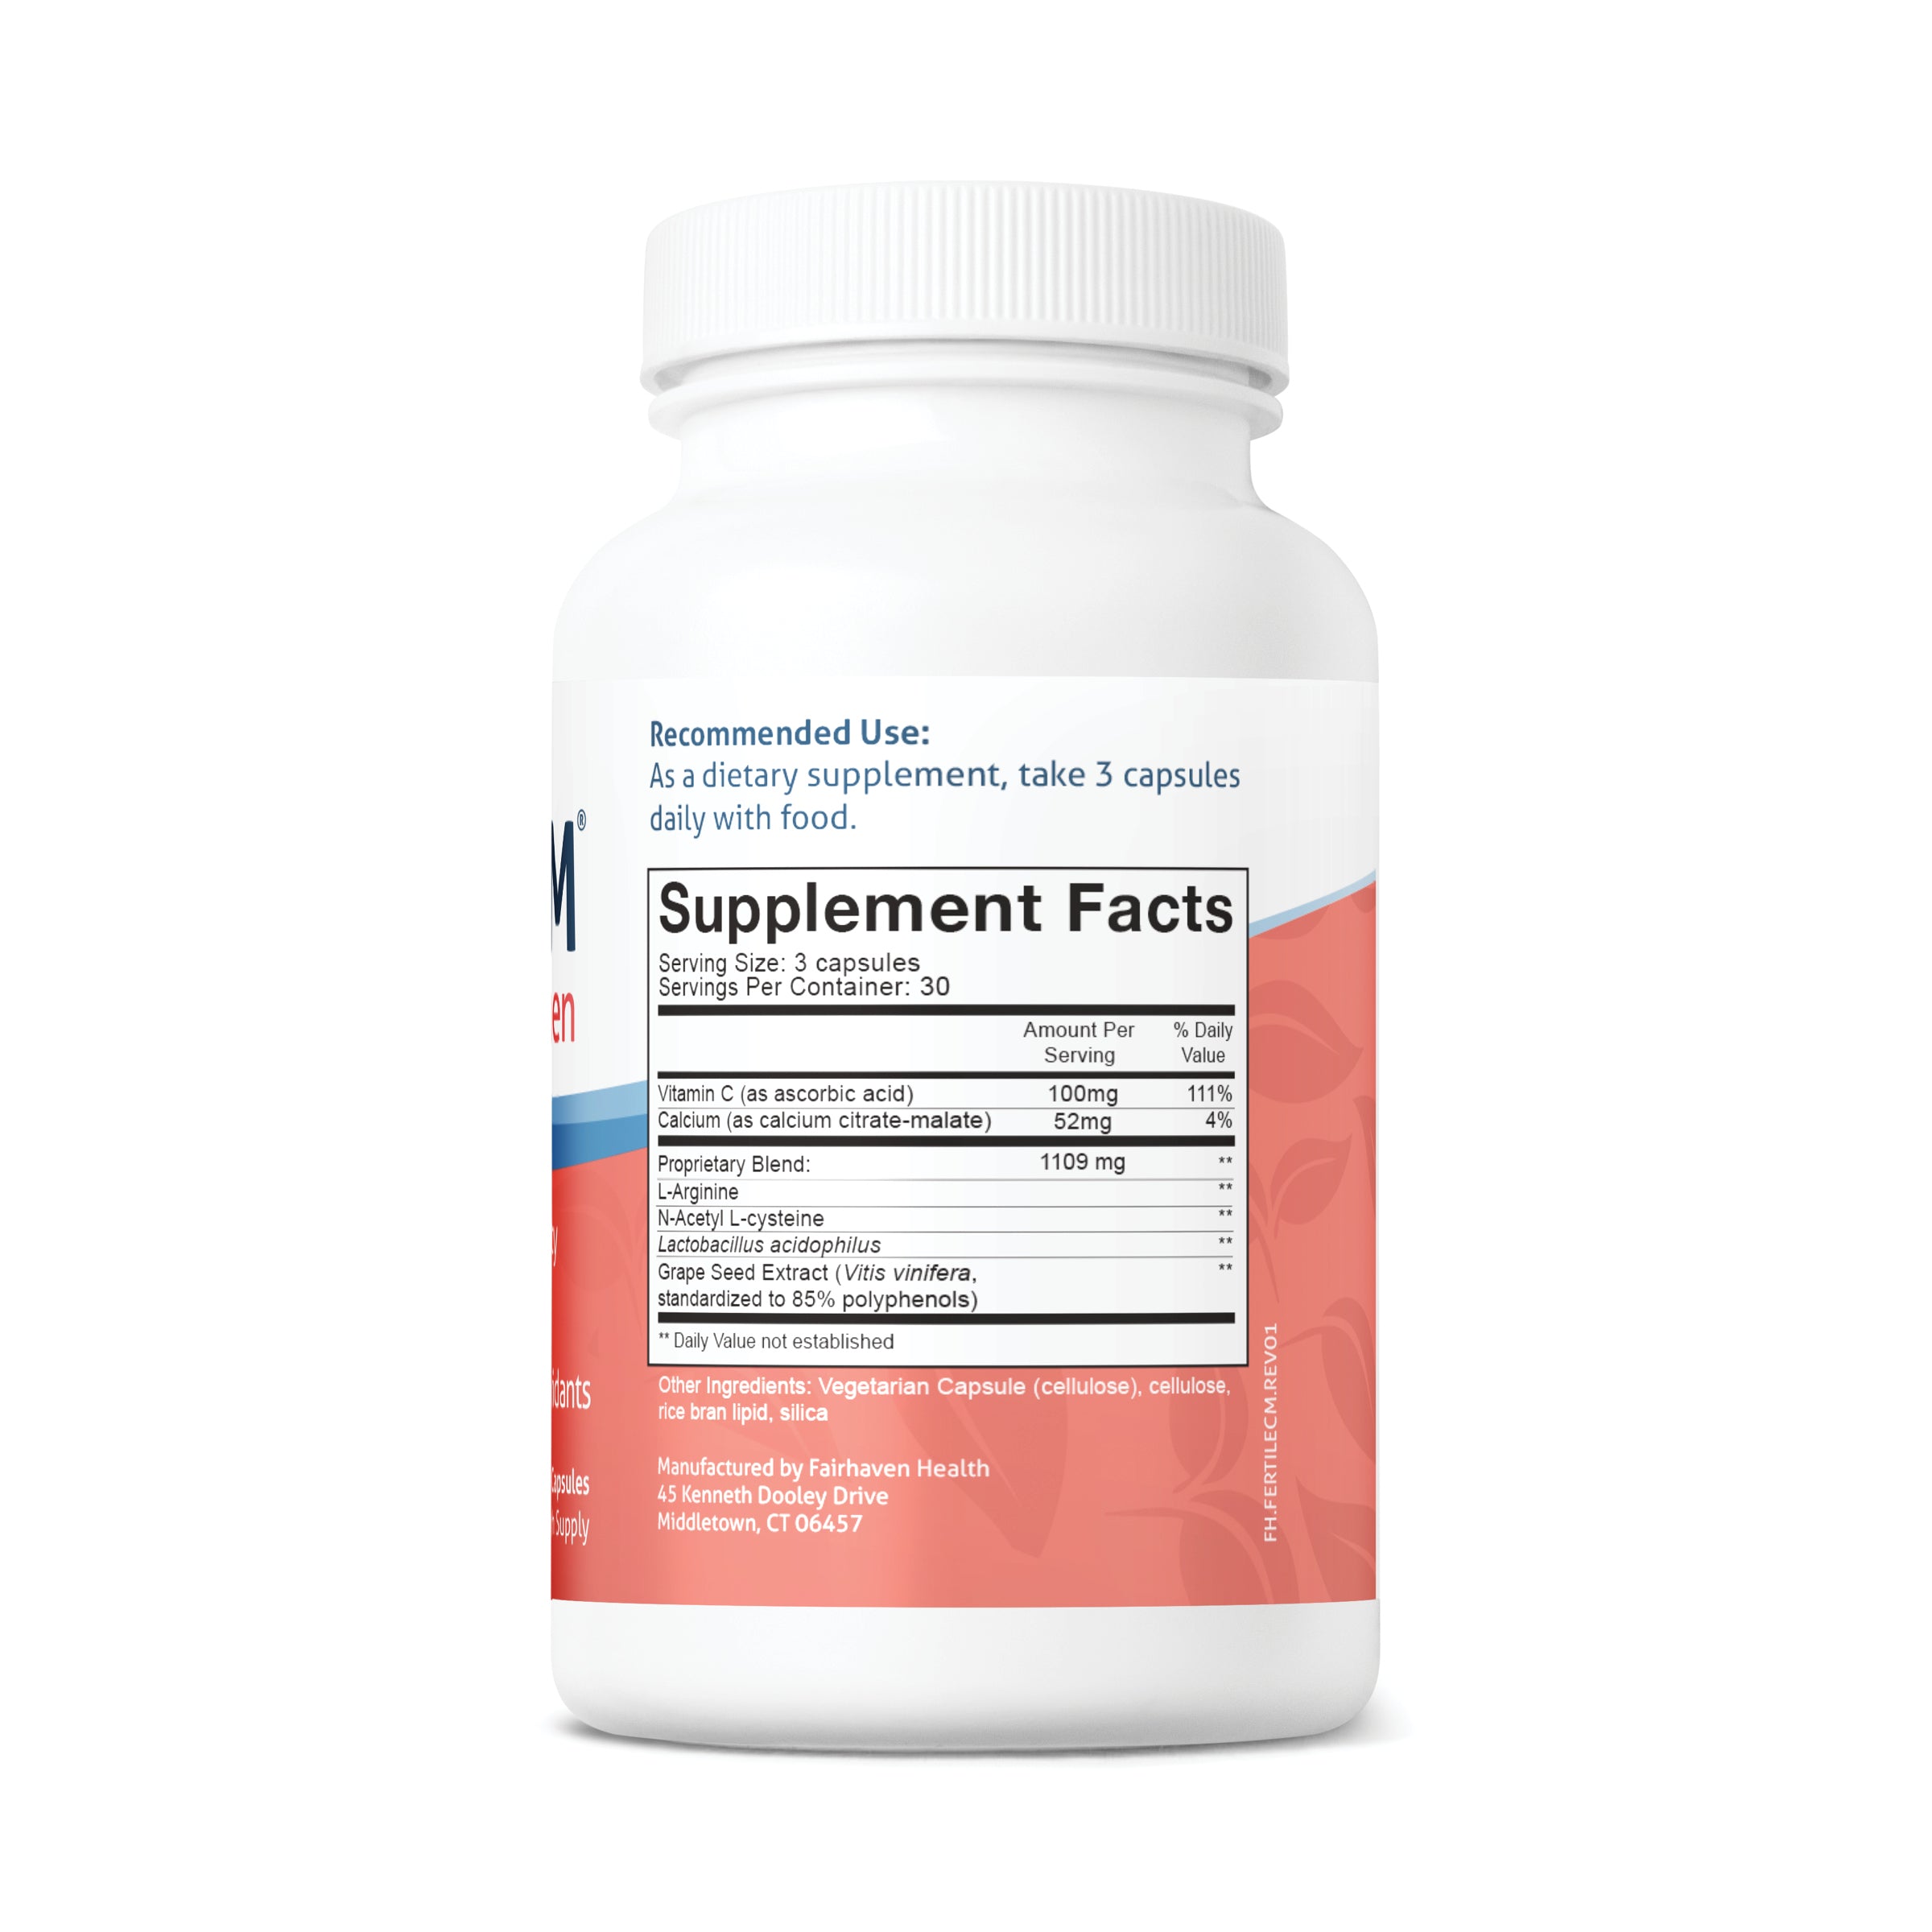 Fairhaven Health FertileCM Cervical Mucus Supplement Supplement Facts on bottle.